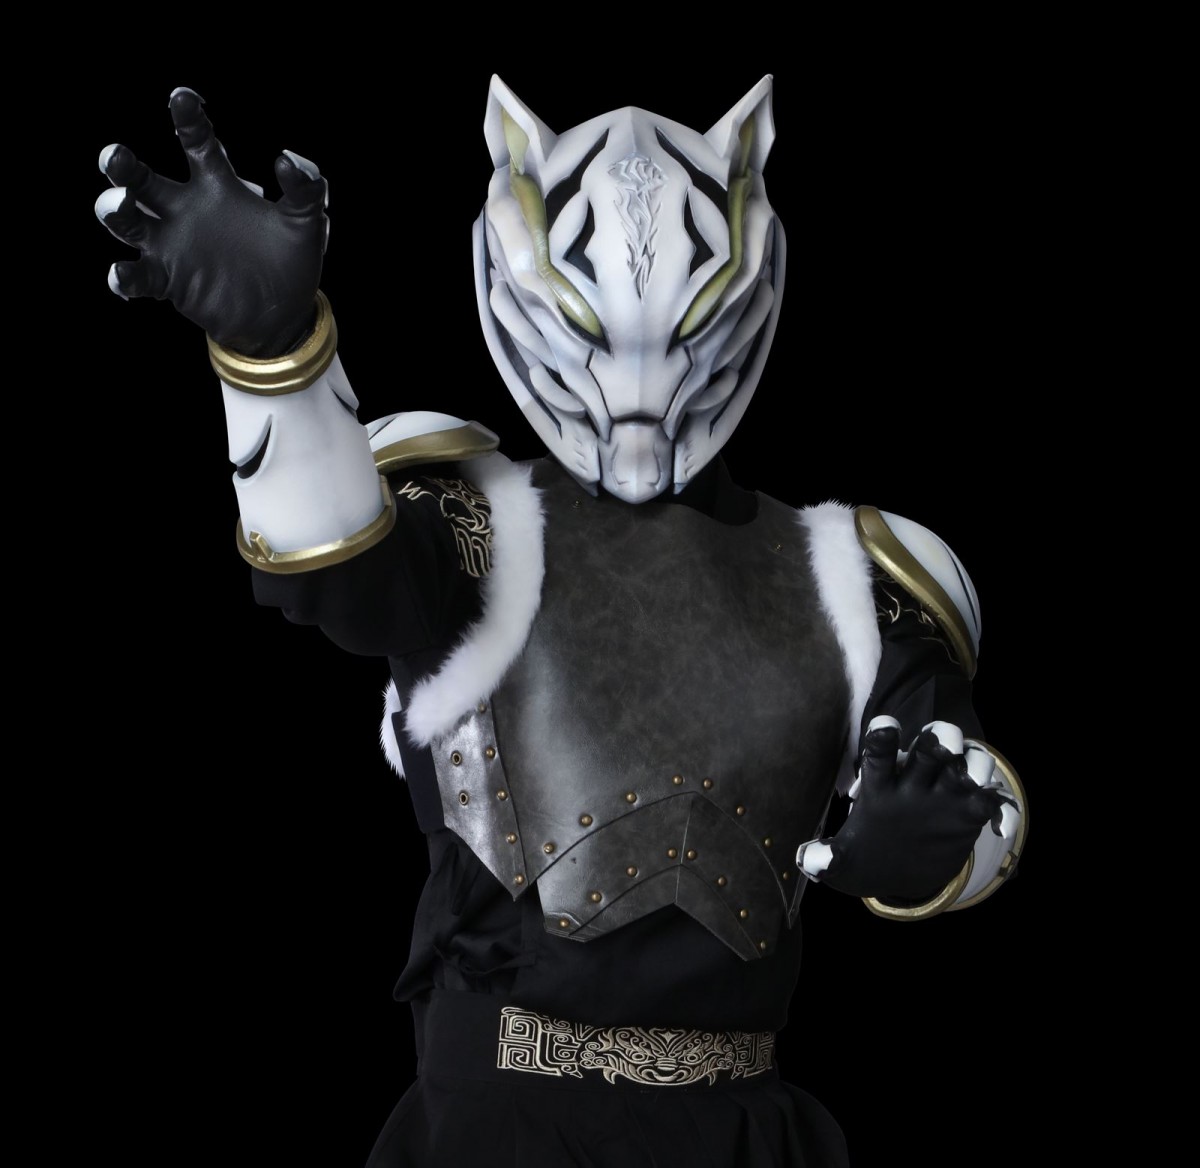 『ウルトラマンレグロス』新キャストに大塚明夫、津田健次郎ら　伝説の宇宙拳法家を演じる